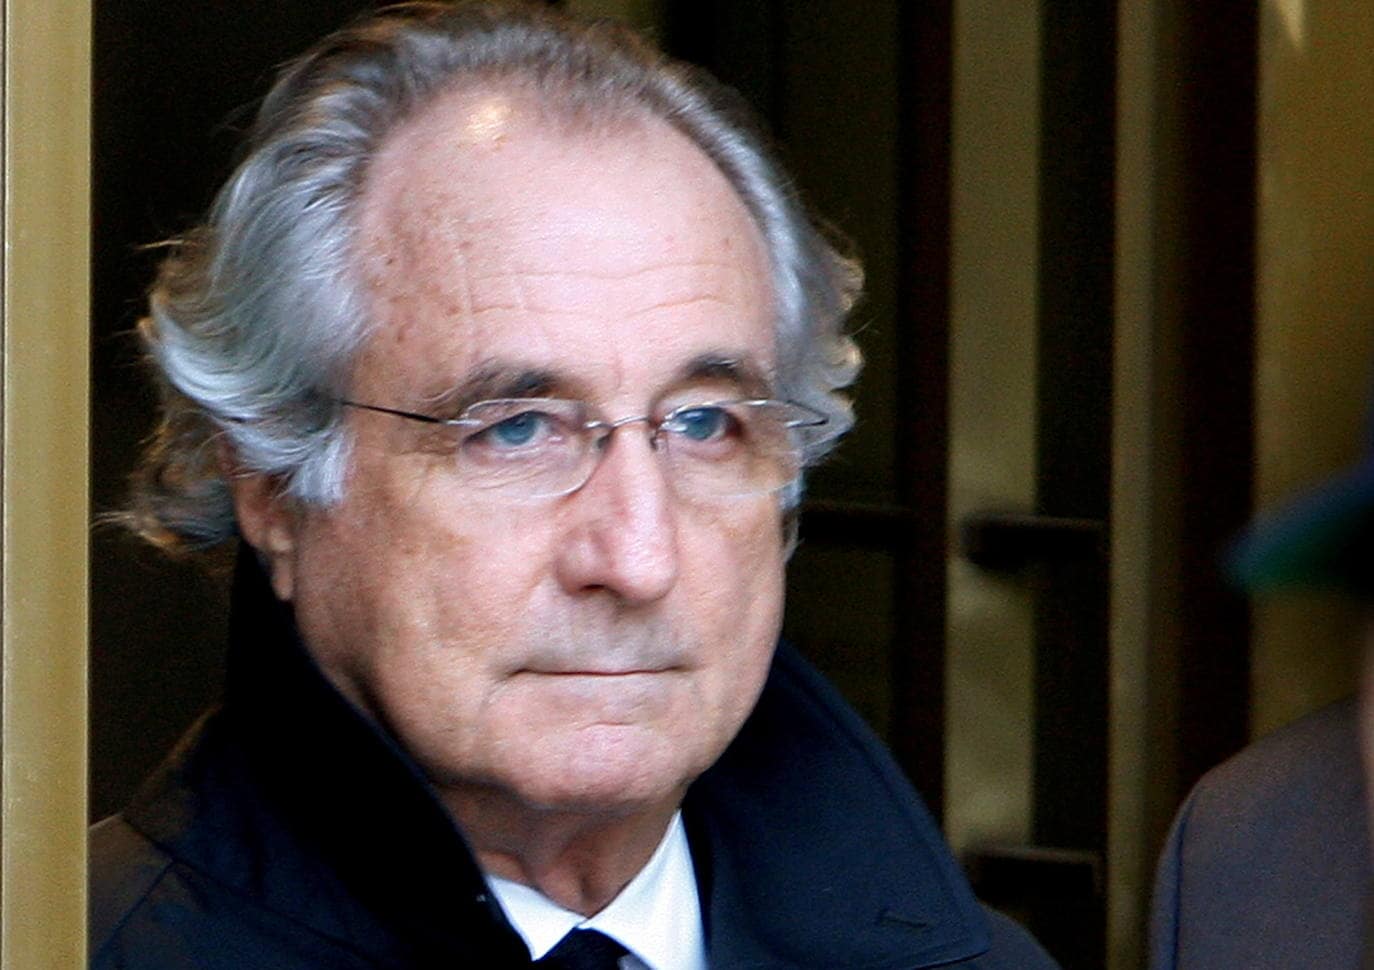 Bernard Madoff./Reuters